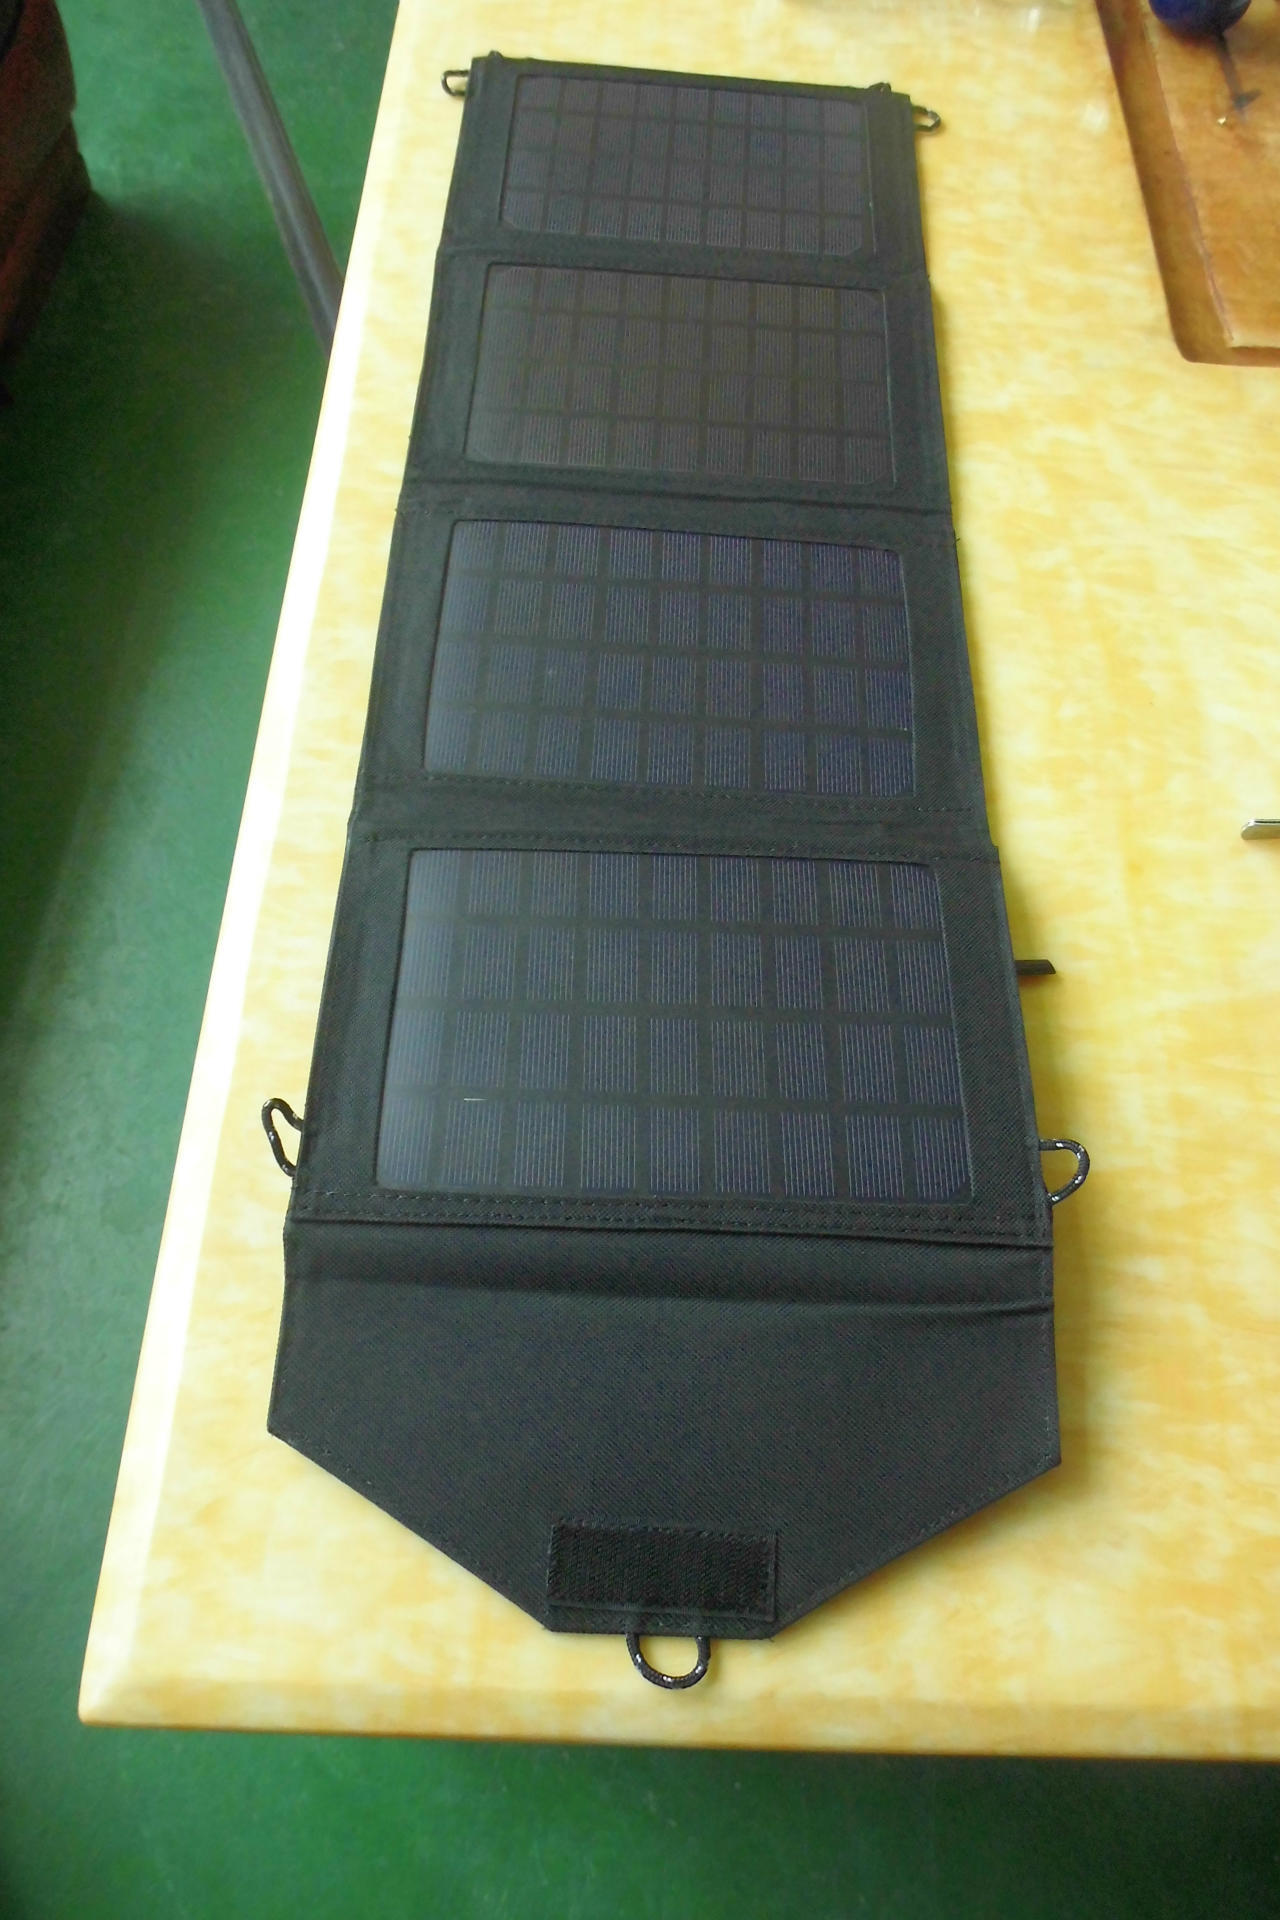 Panneau solaire en Bâche 600D - 5 V - batterie 0 sans batterie mAh - Ref 3396333 Image 2